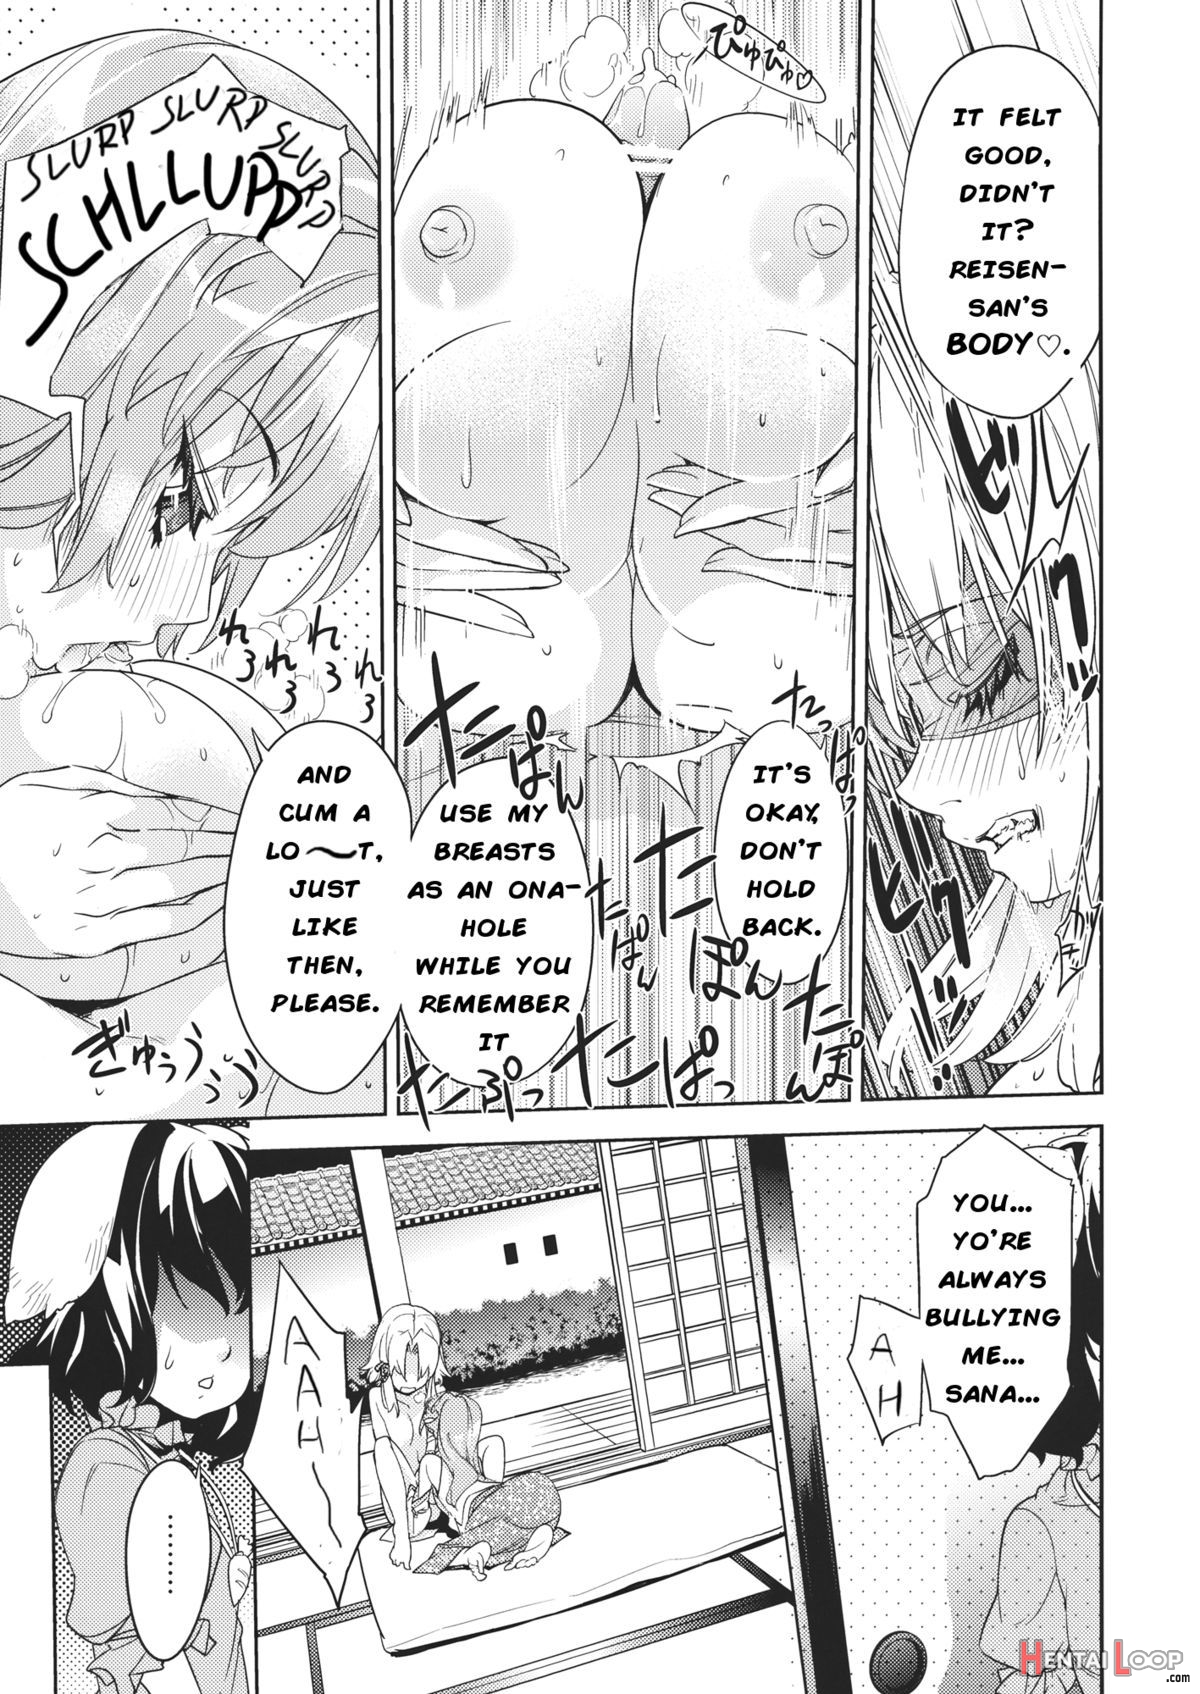 Sanae Udon Futatama page 4